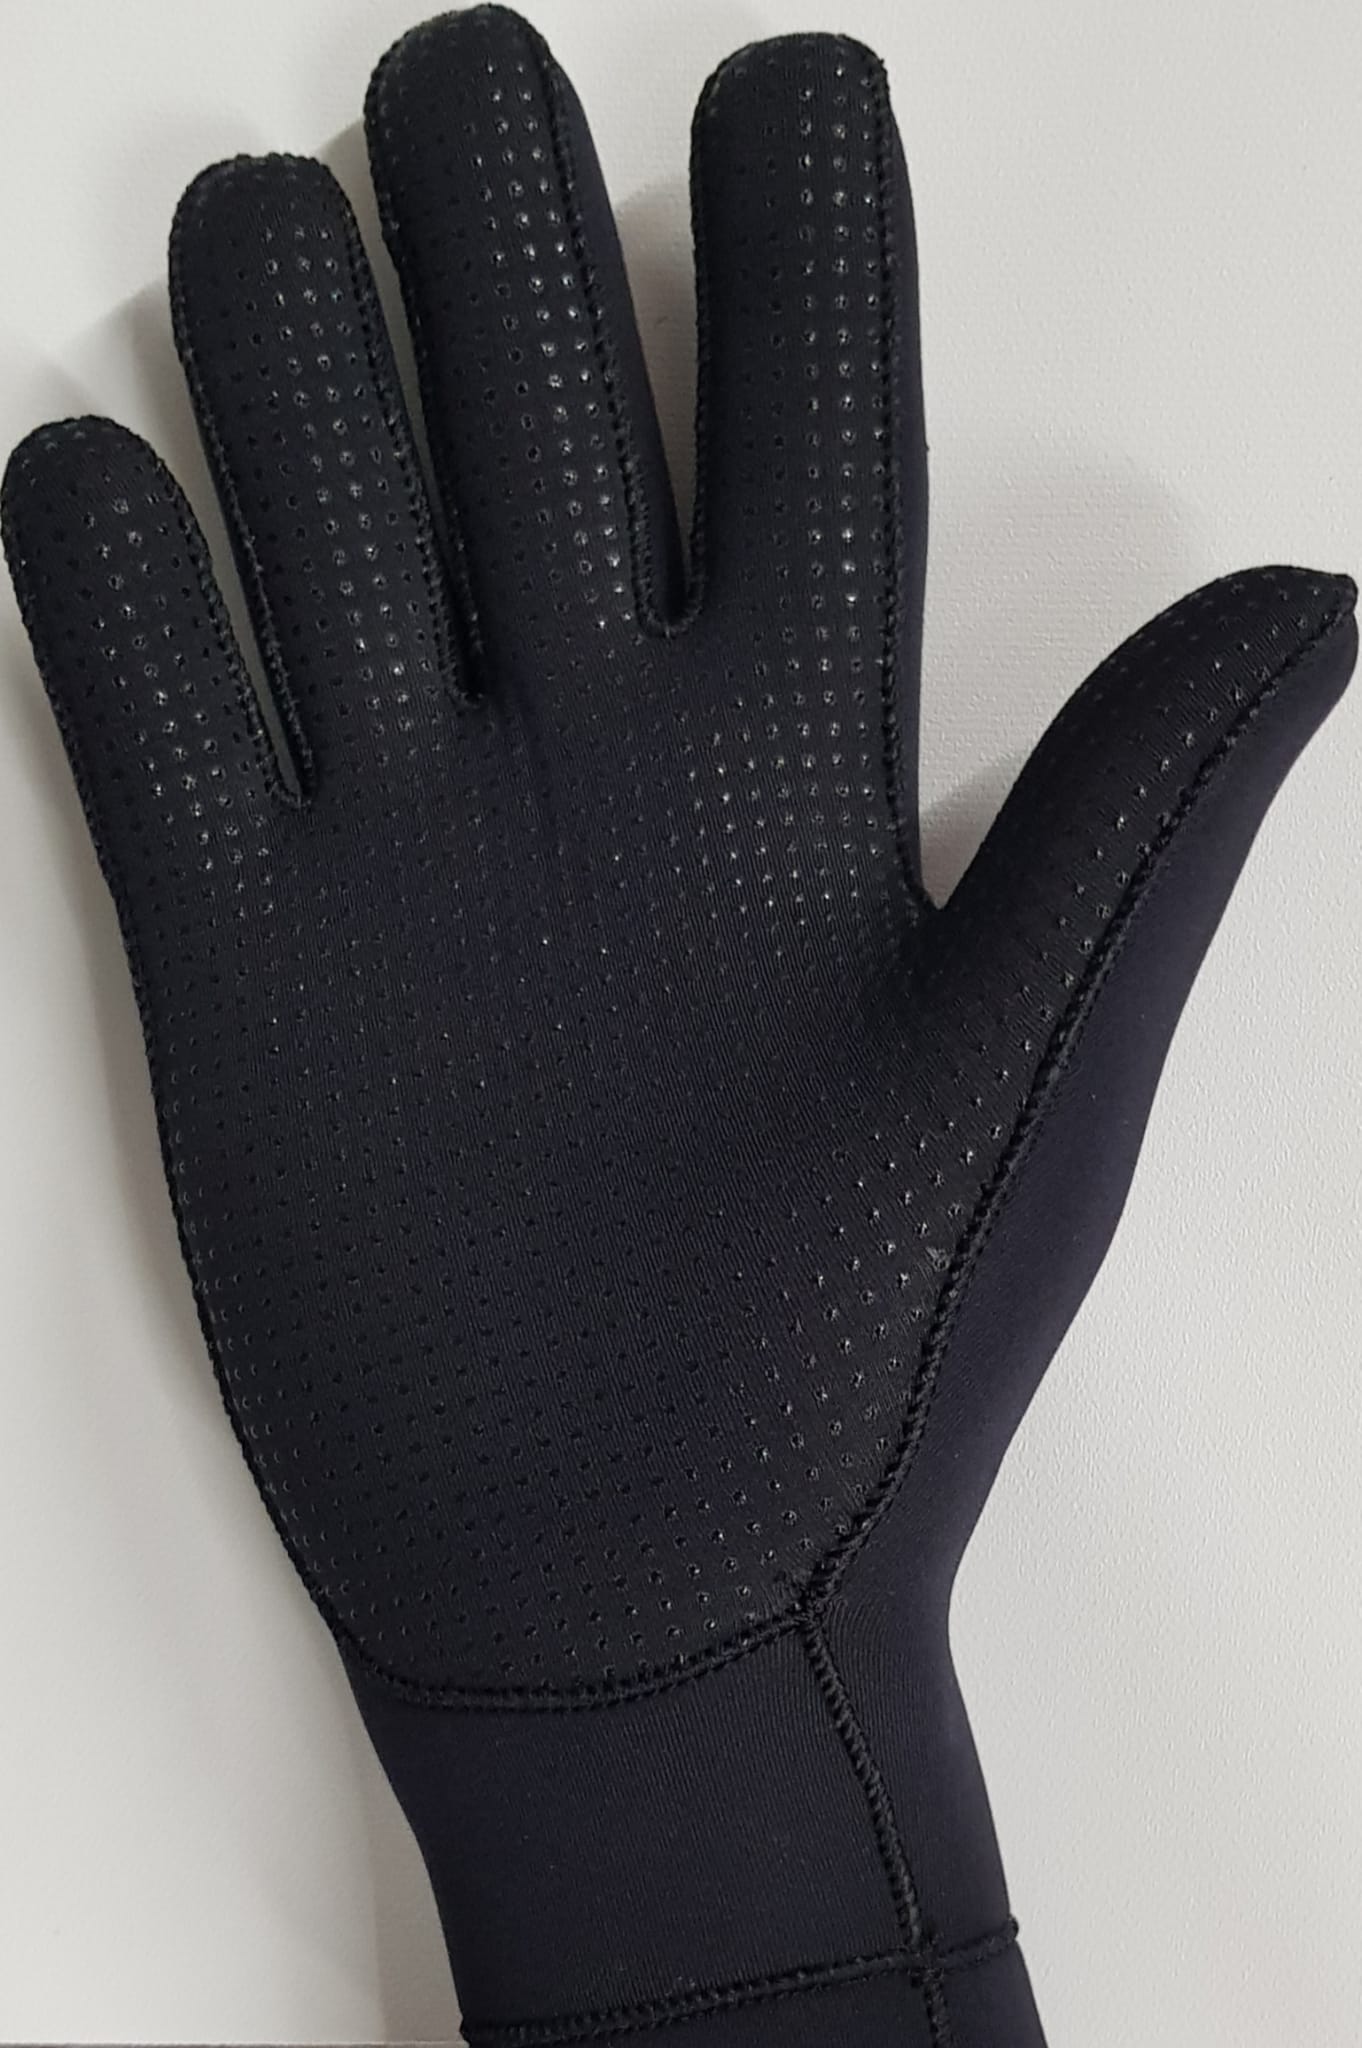 MDNS 3mm Grip Gloves